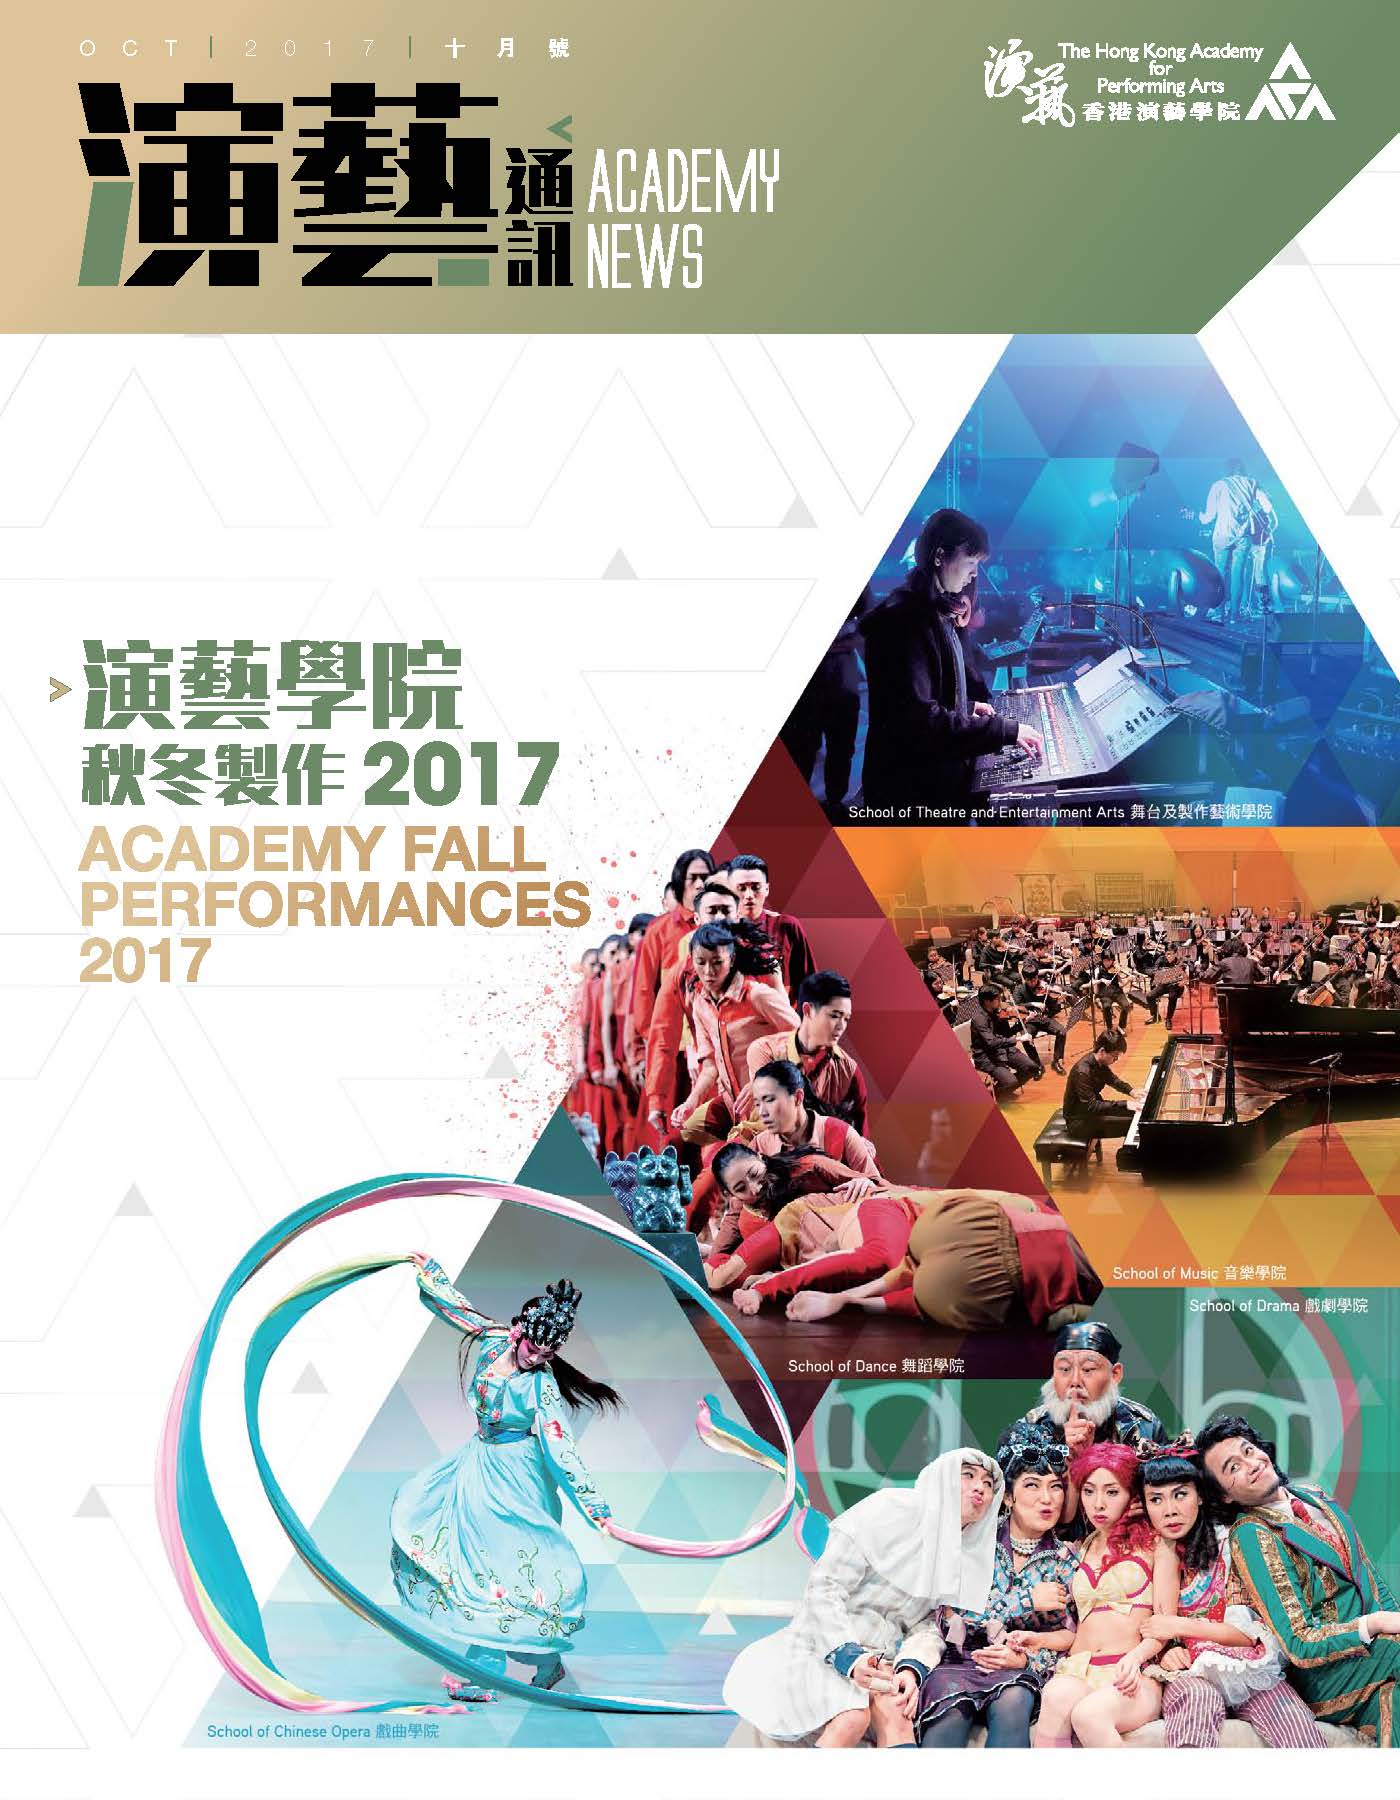 Academy News Oct 2017